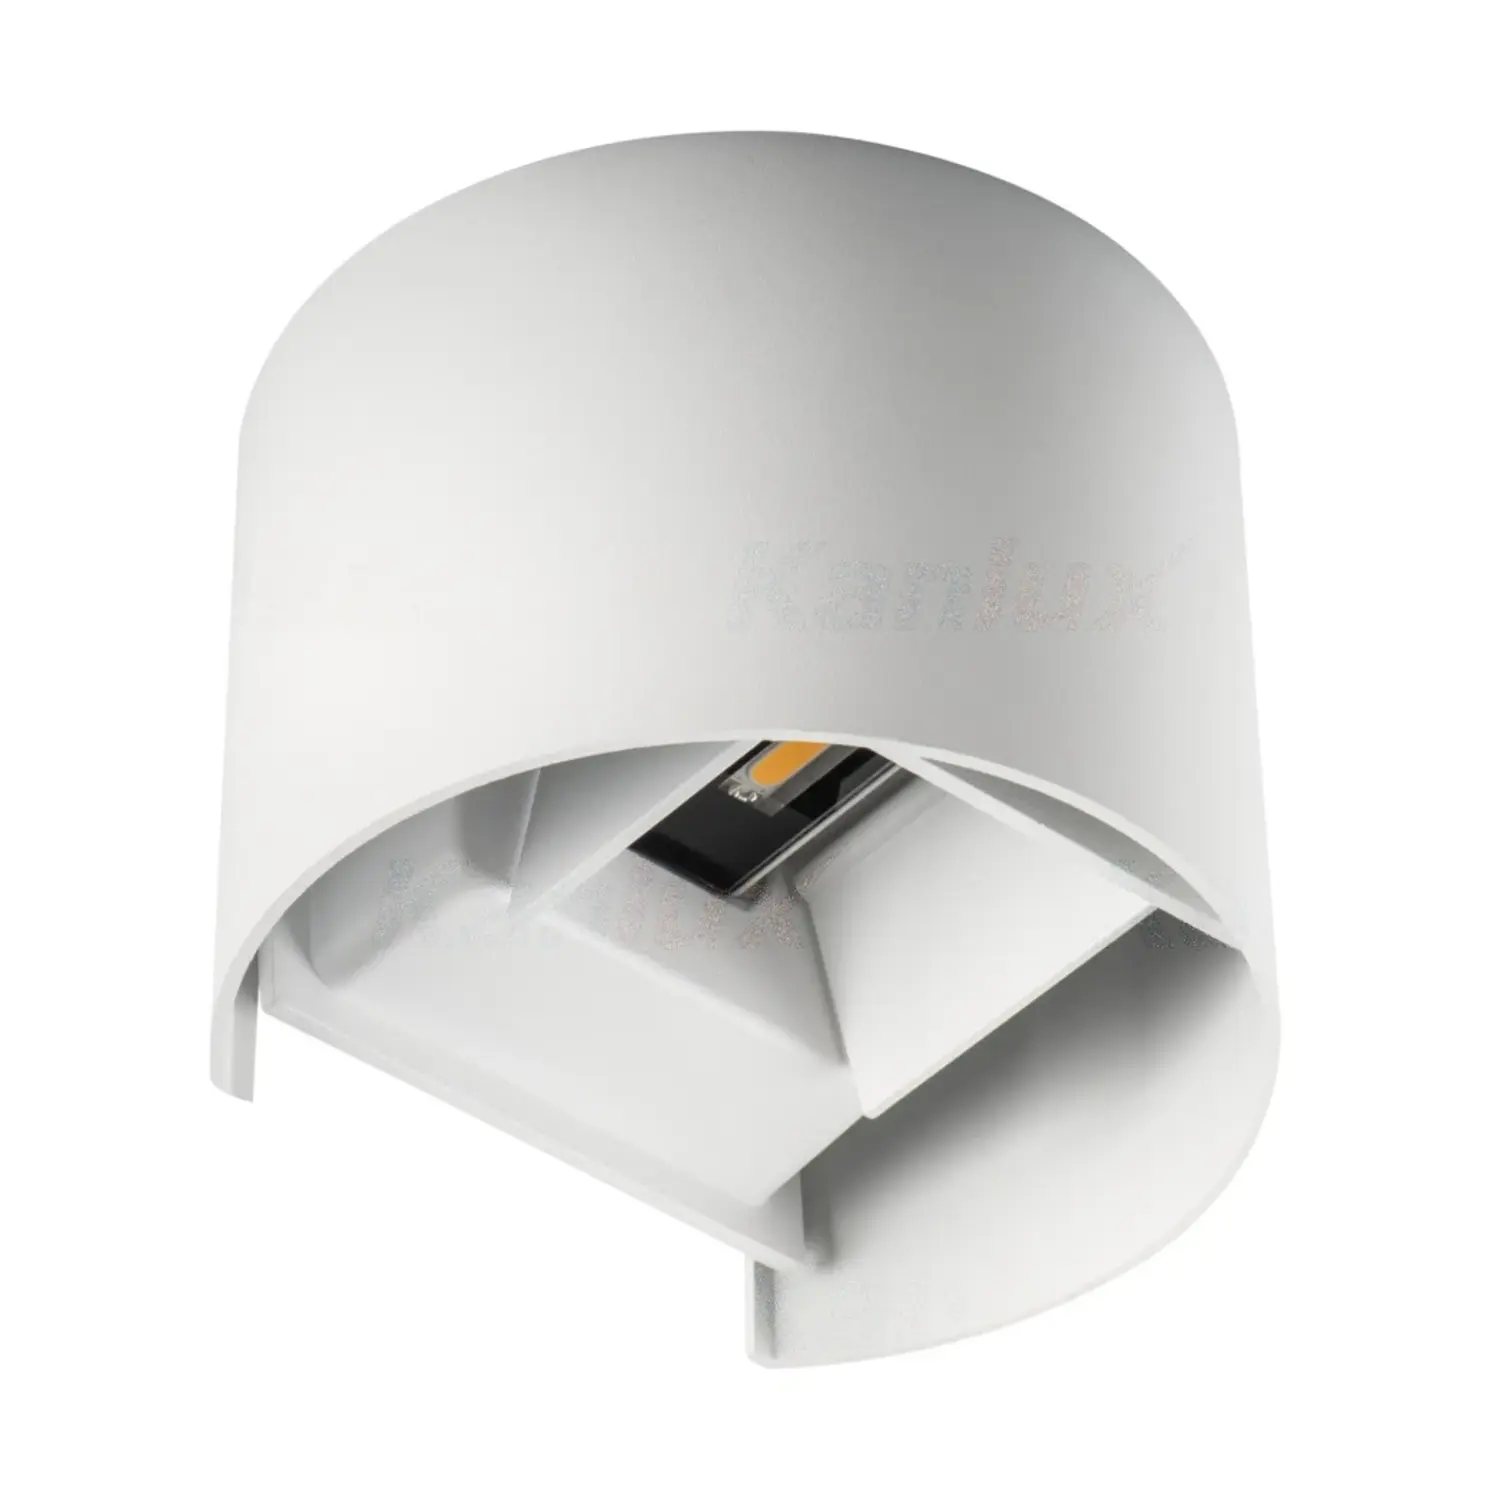 immagine del prodotto lampada parete muro led applique doppia luce 7 watt bianco naturale bianco tondo